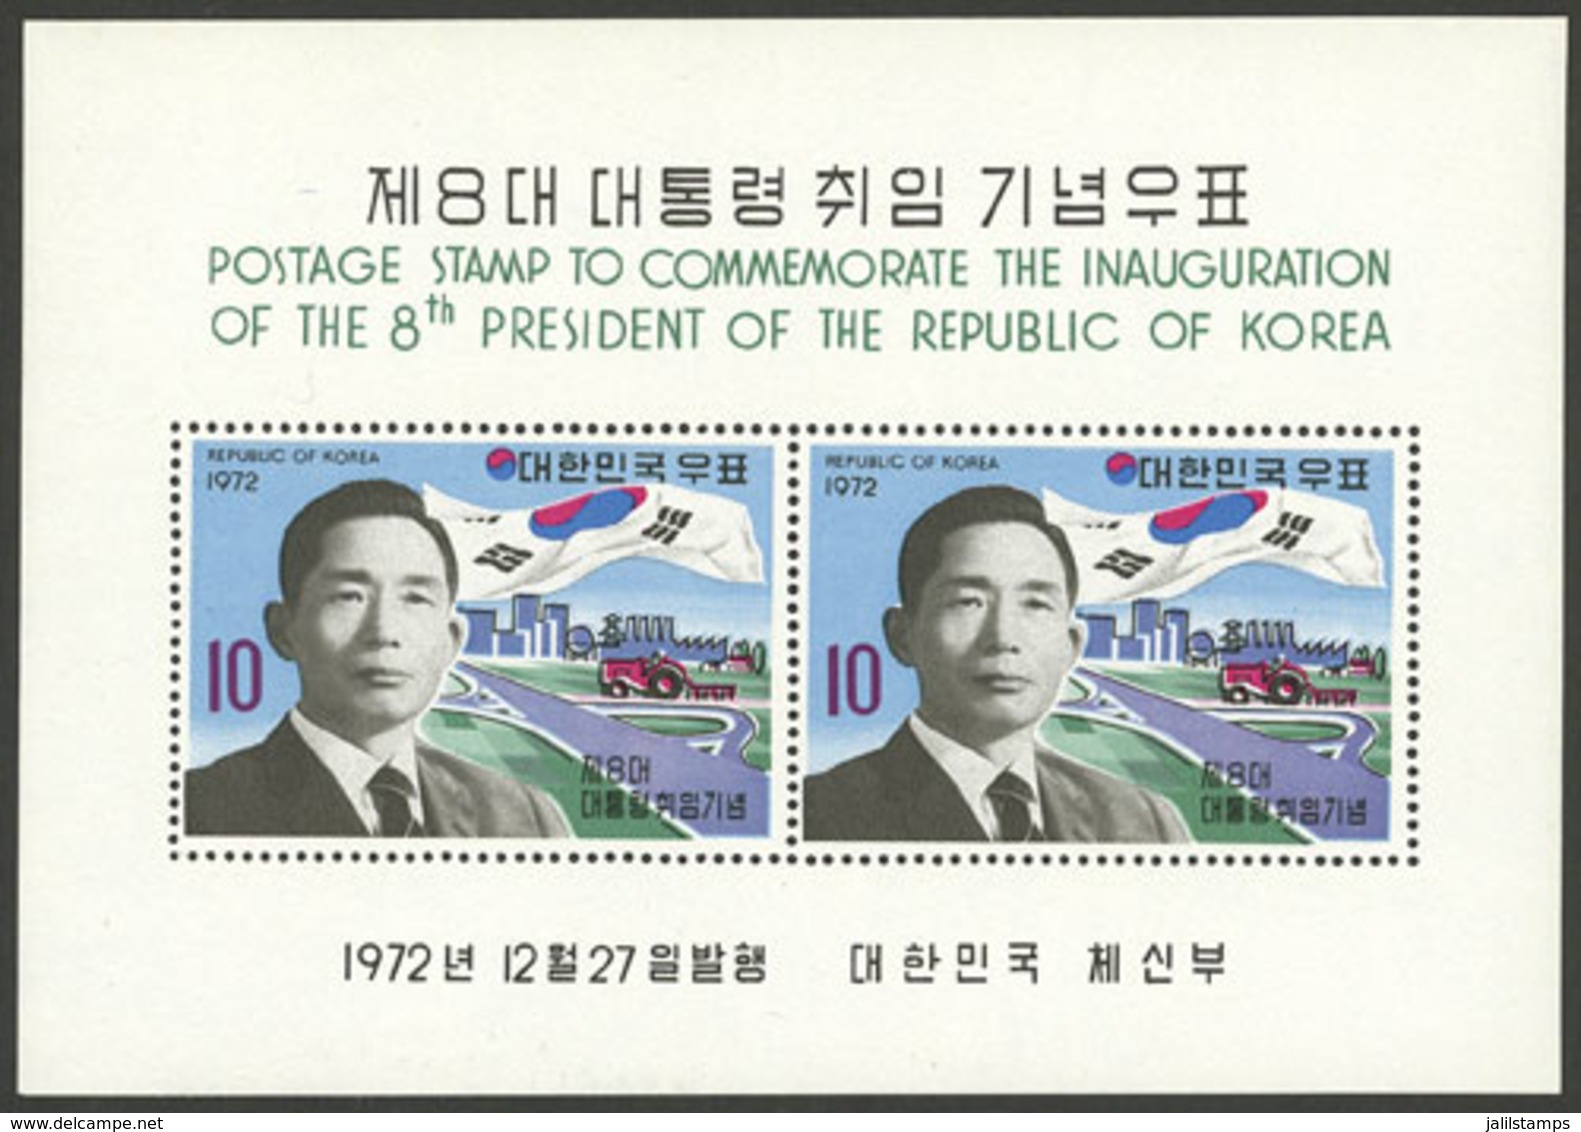 SOUTH KOREA: Sc.844a, 1972 Park Chung Hee 4th Term, MNH, VF Quality! - Korea, South